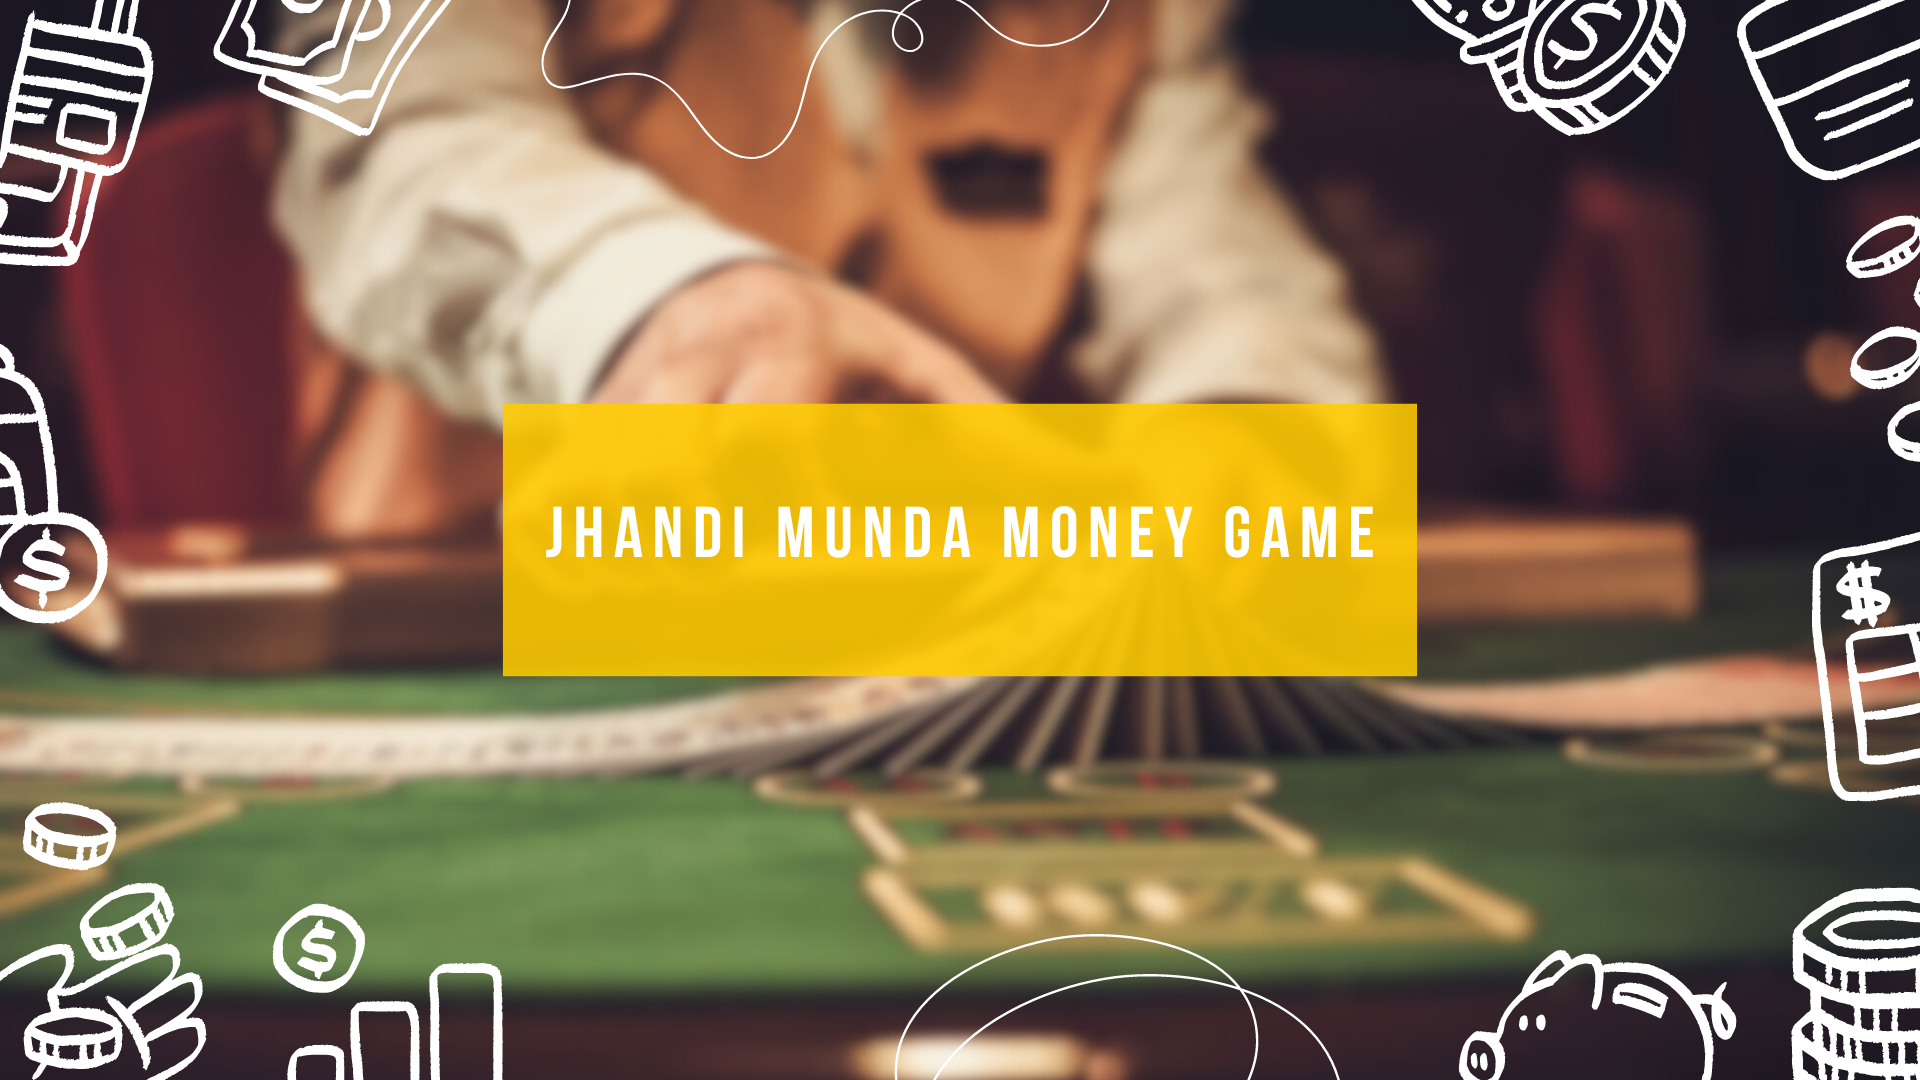 Jhandi Munda Money Game